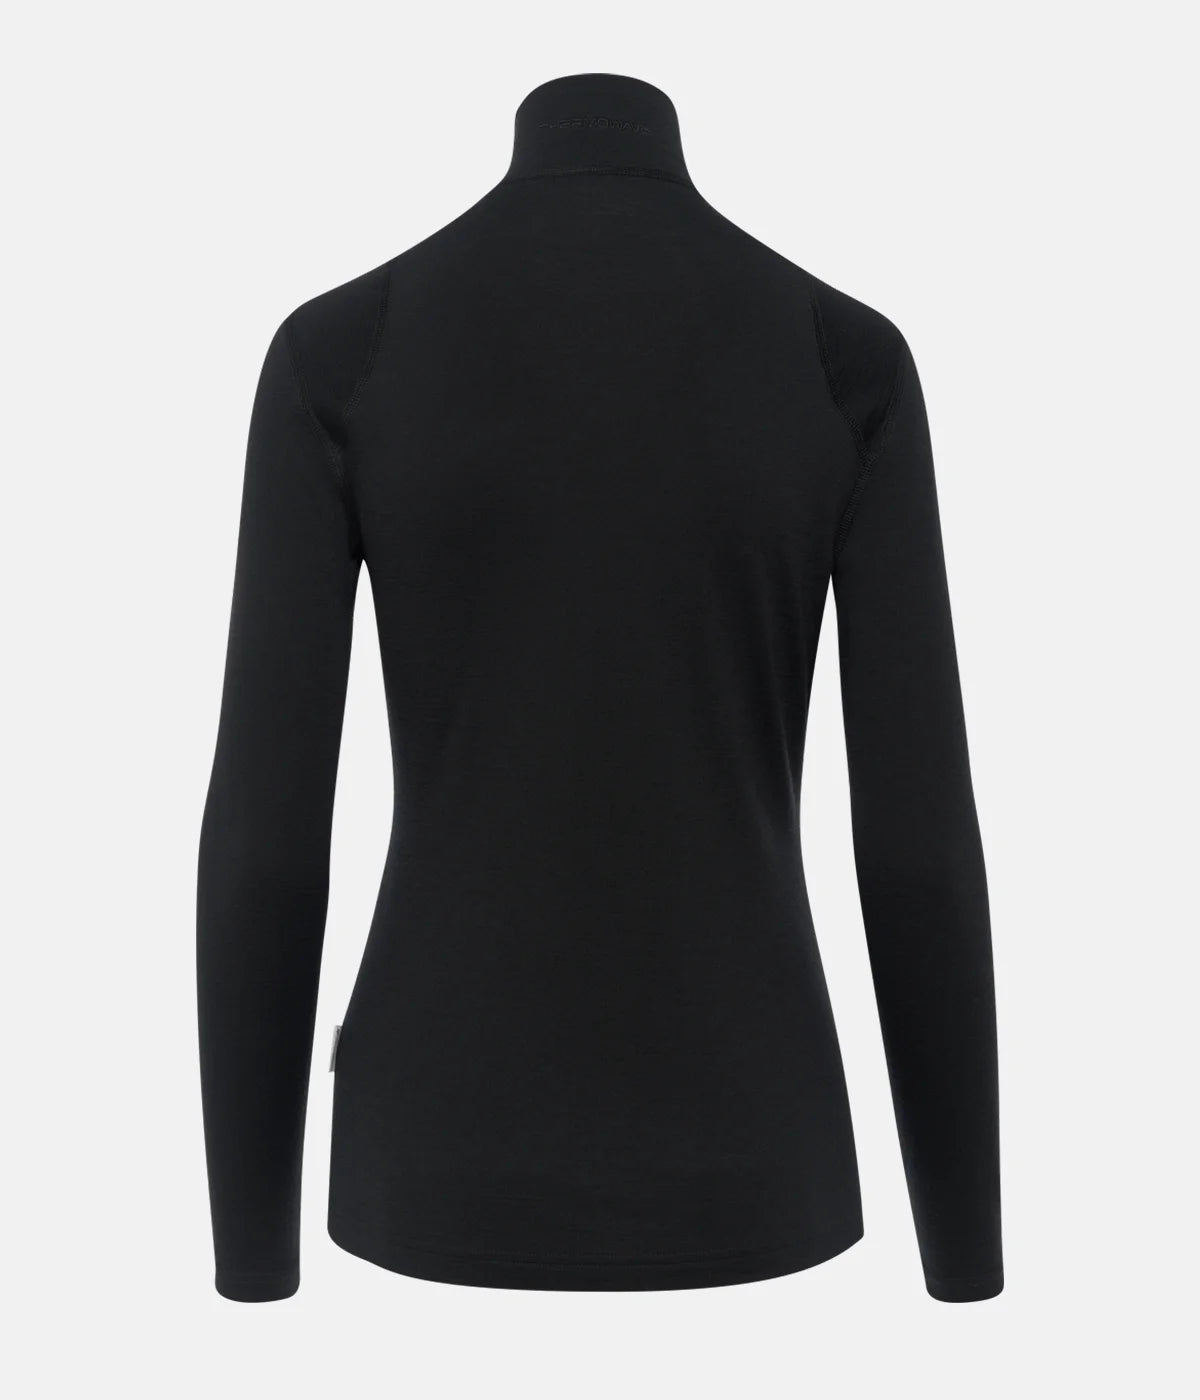 Sample: Women's Merino Wonder Thermal 1/2 Zip LS Shirt